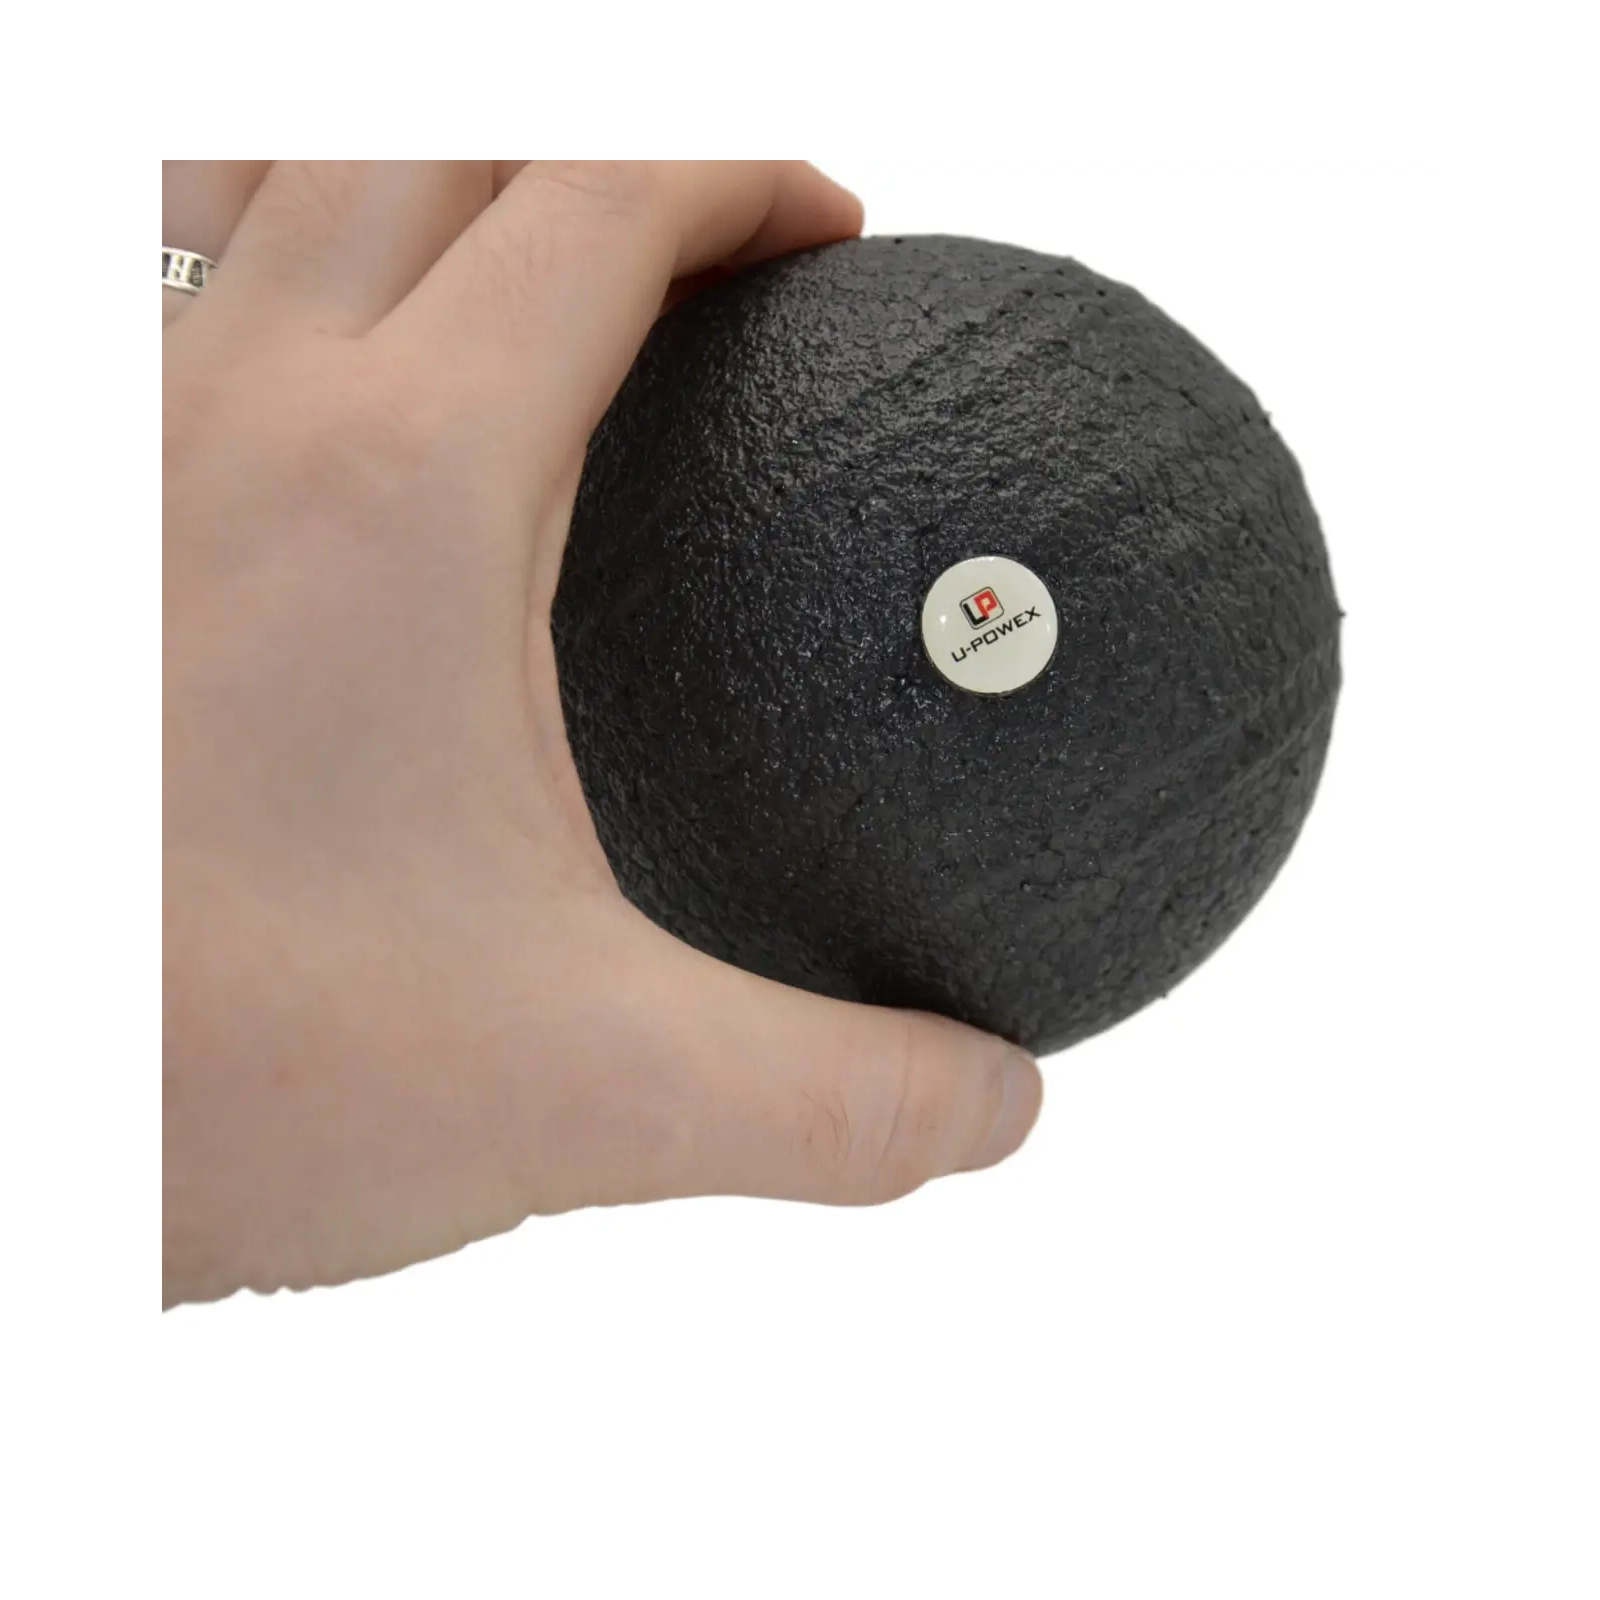 Массажный мяч U-Powex Epp foam ball d10 Black (UP_1003_Ball_D10cm) изображение 5